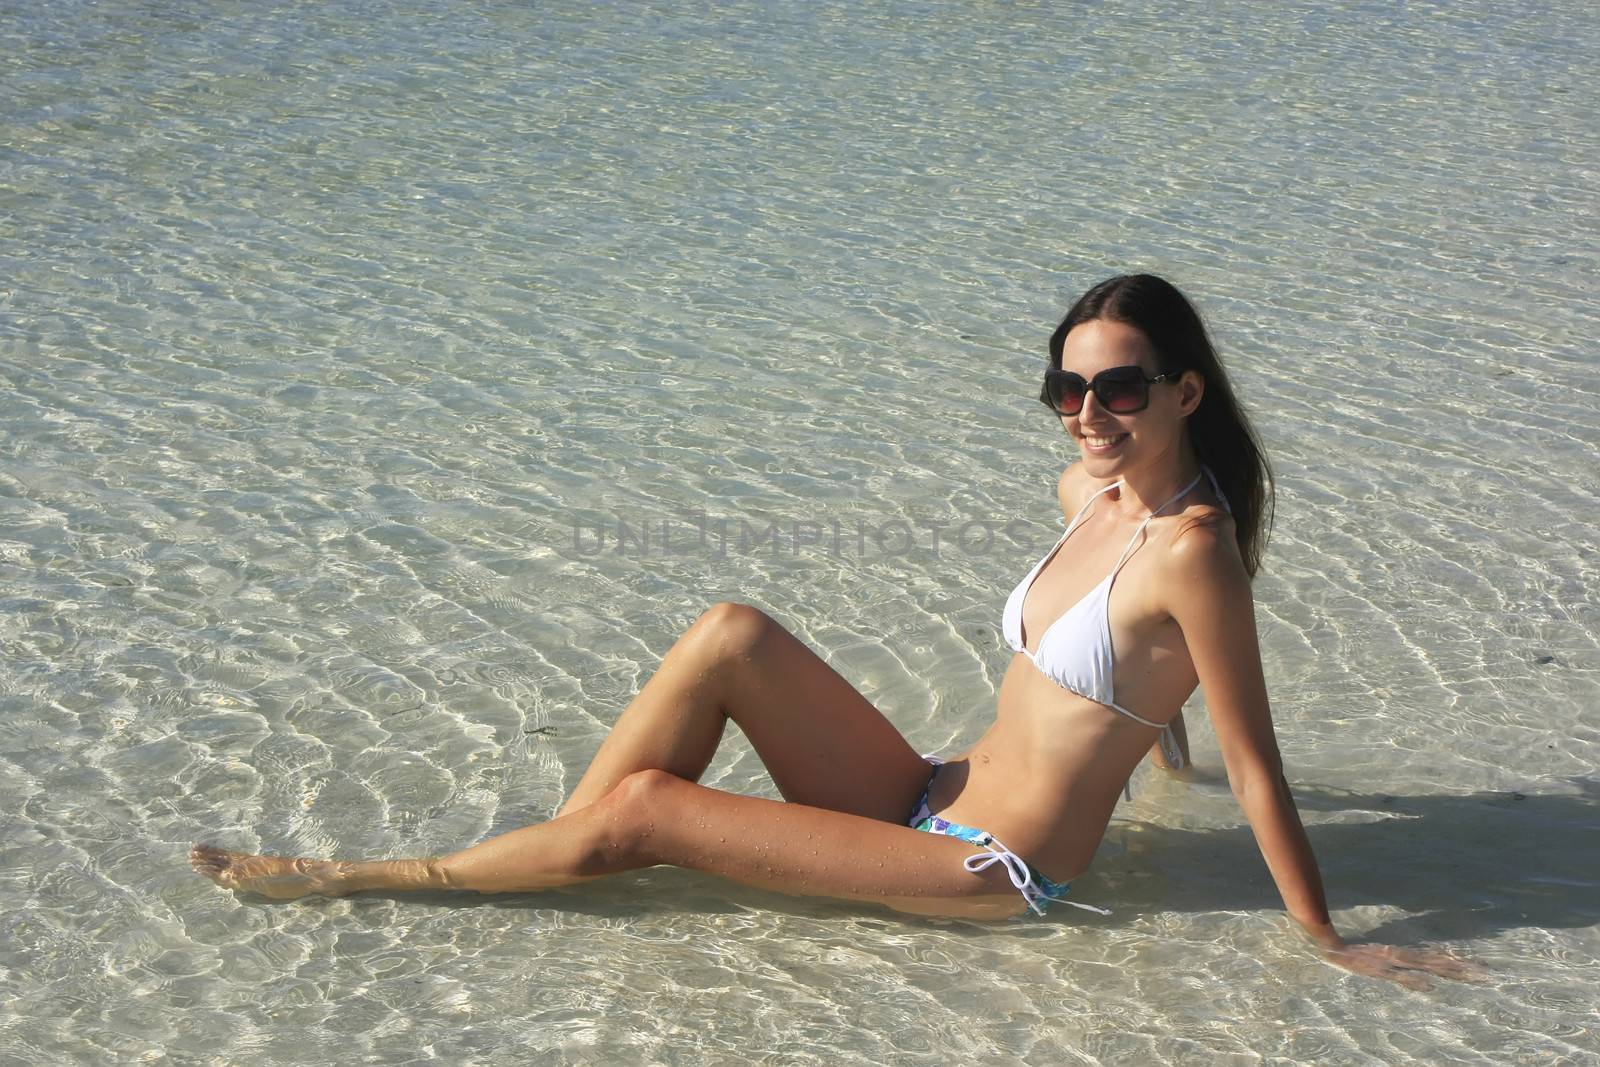 Young woman in bikini sitting in clear shallow water